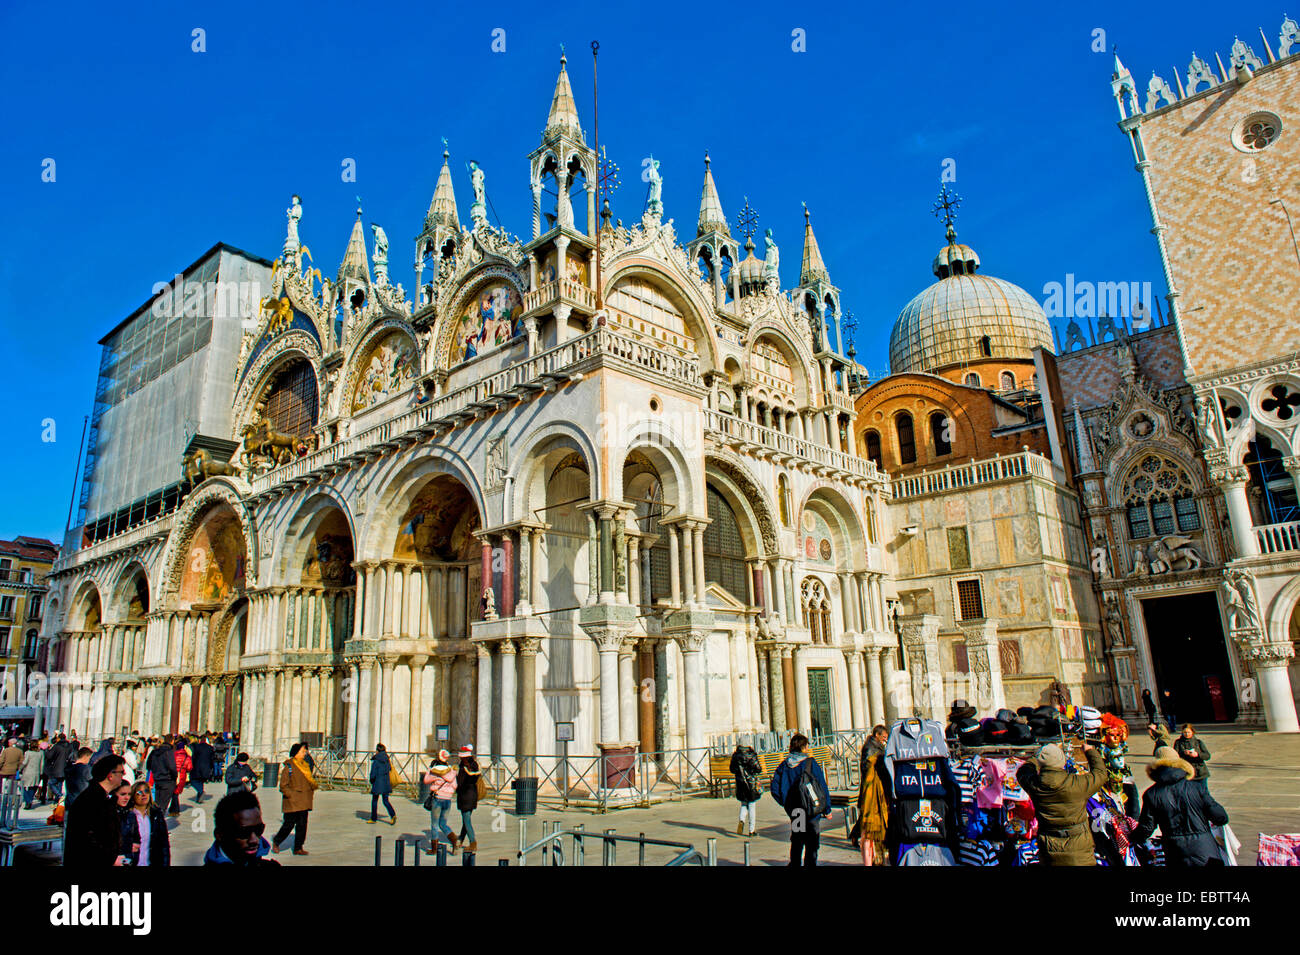 Doge's Palace, Italy, Venice Stock Photo